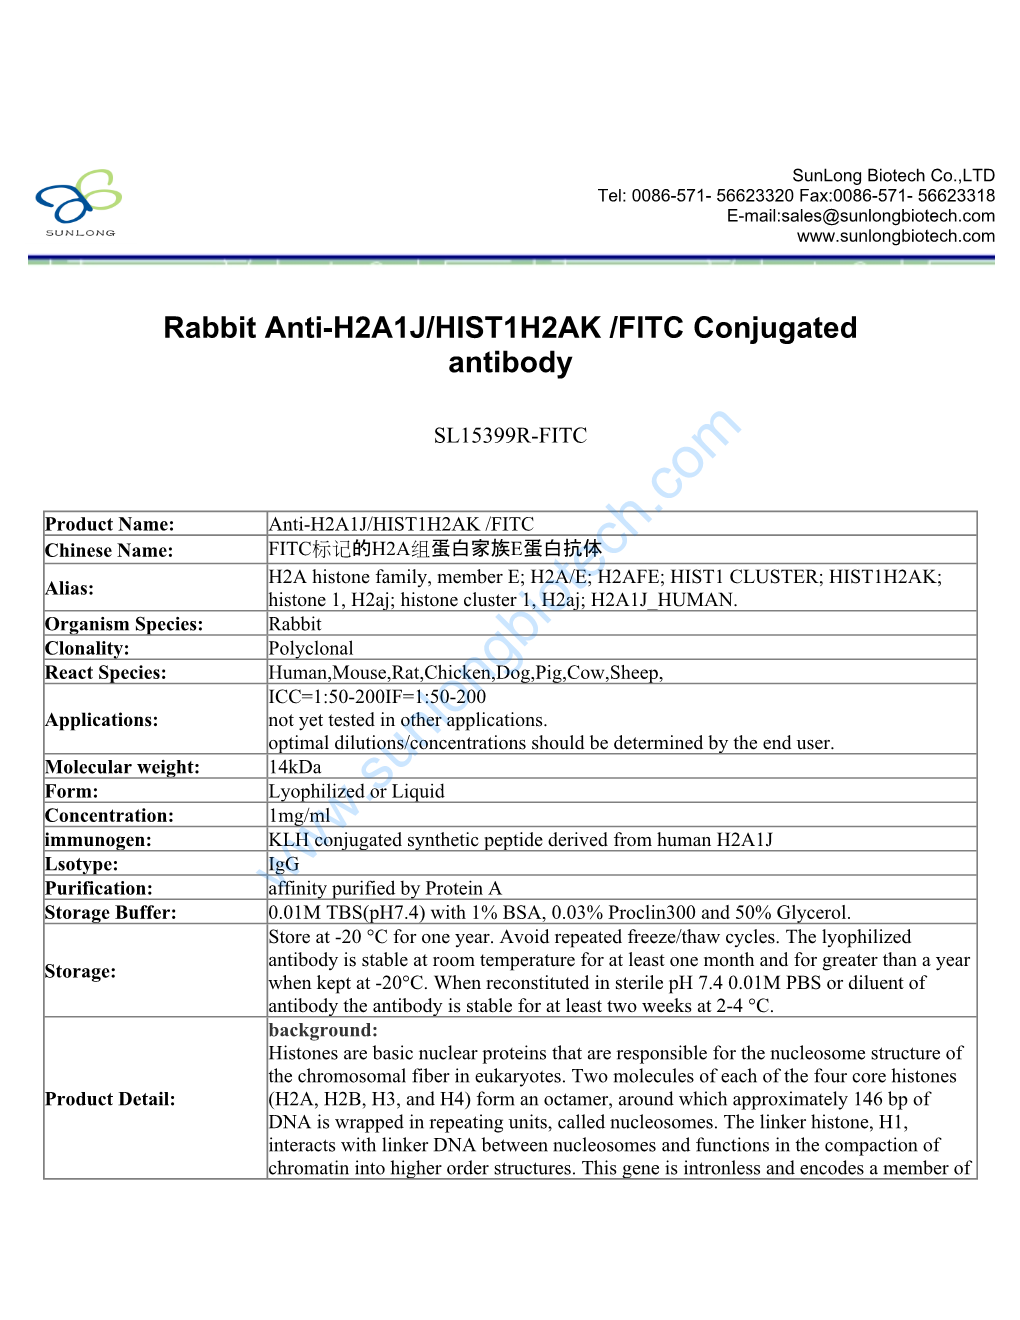 Rabbit Anti-H2A1J/HIST1H2AK /FITC Conjugated Antibody